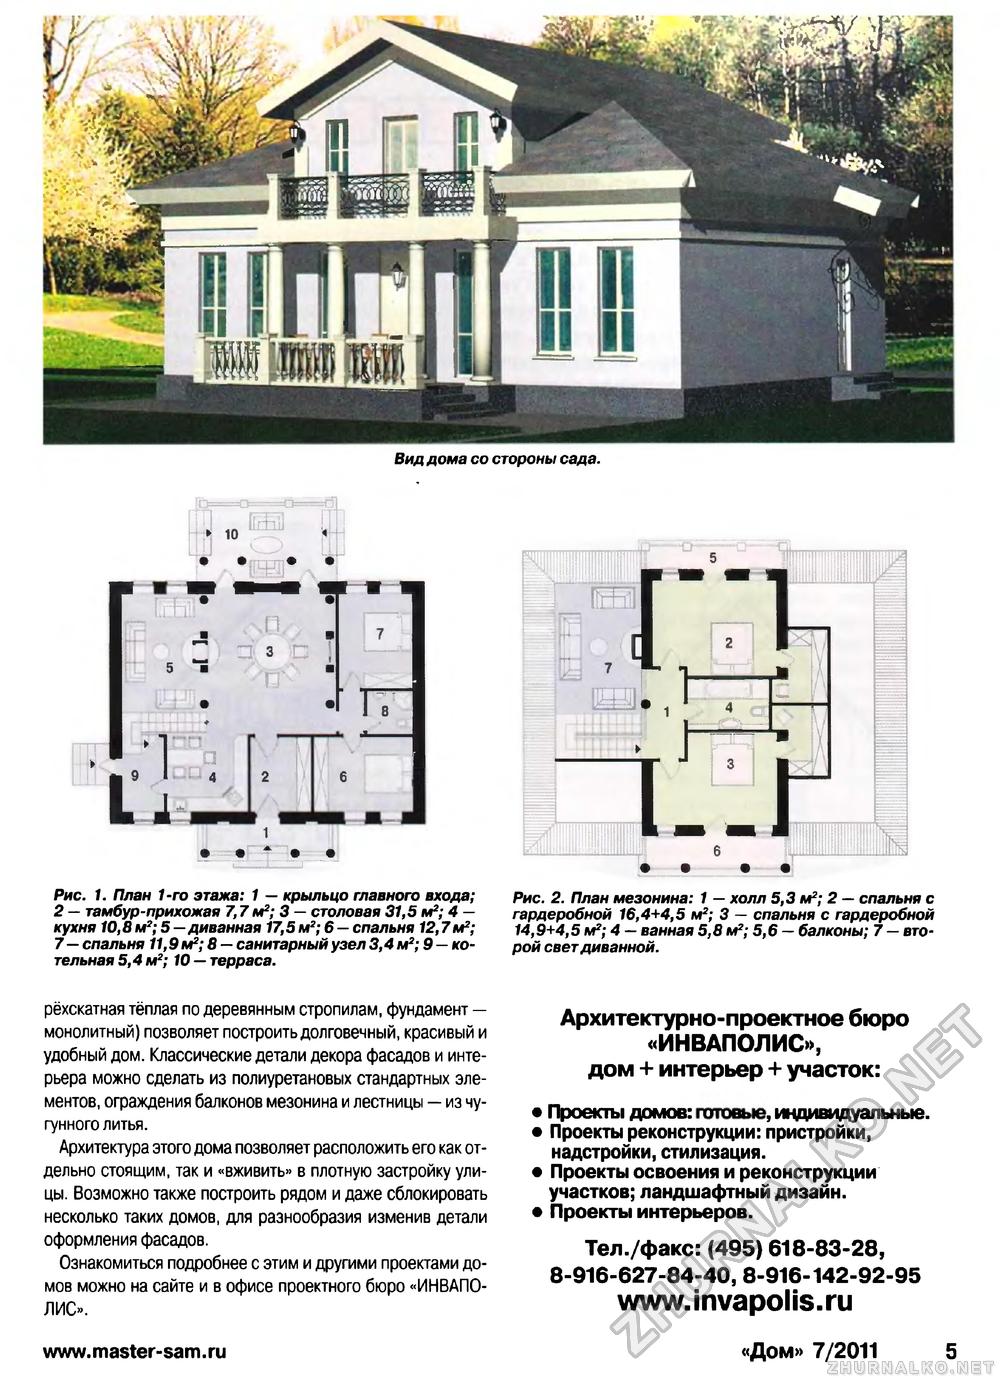 Дом 2011-07, страница 5